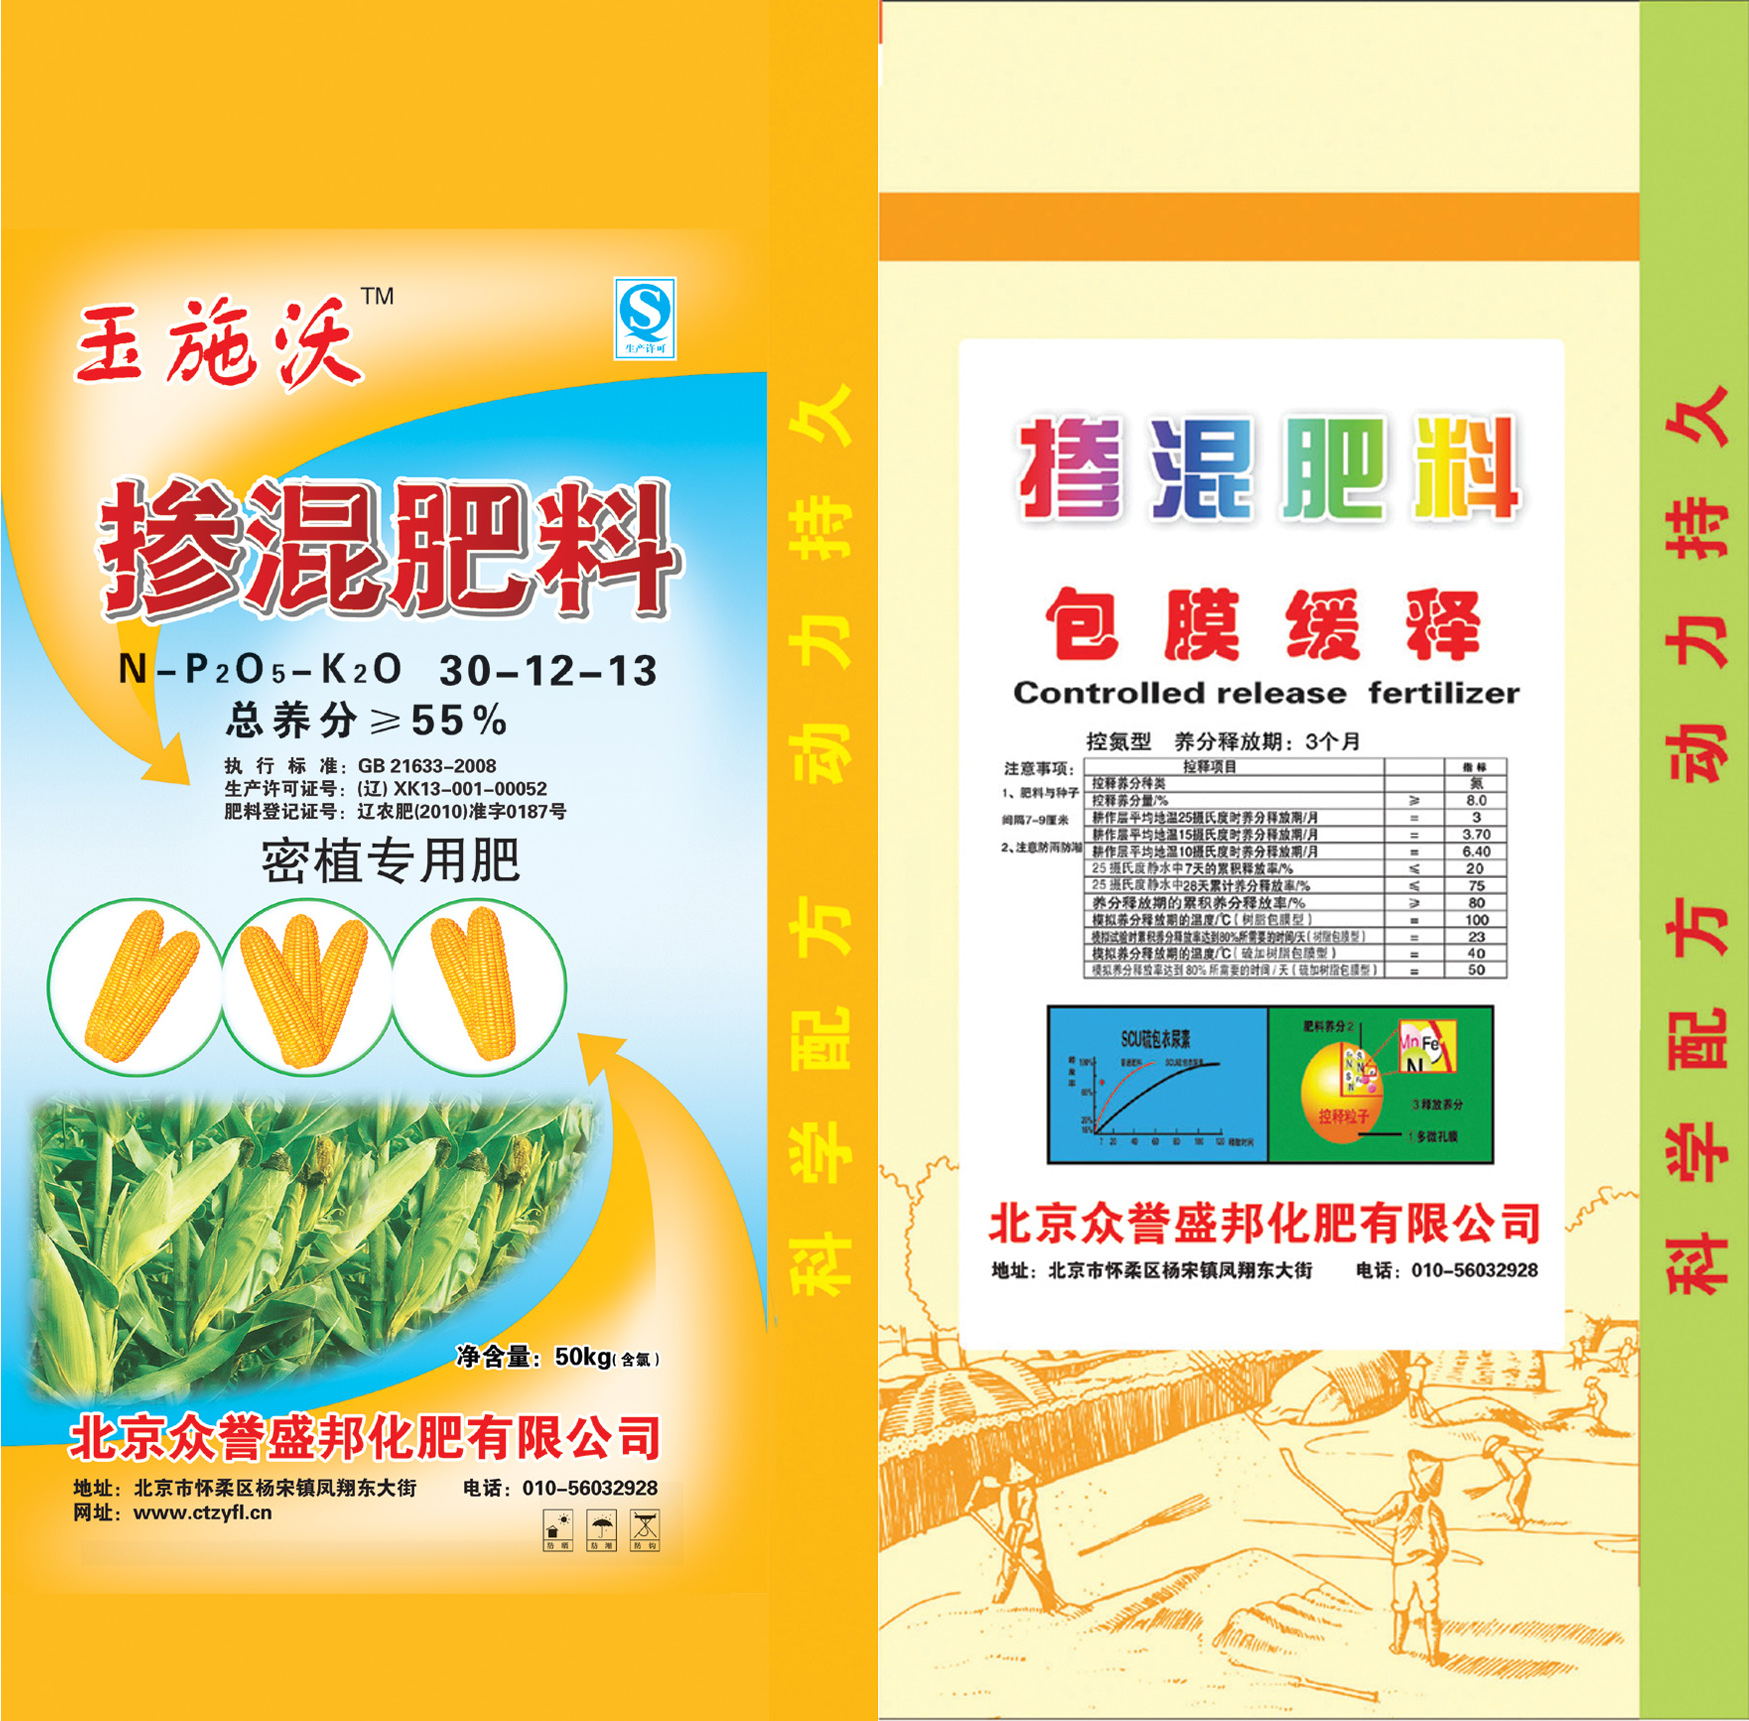 玉施沃掺混肥料 密植专用肥 薄膜缓释总养分大于或等于百分之55北京众誉盛邦化肥有限公司